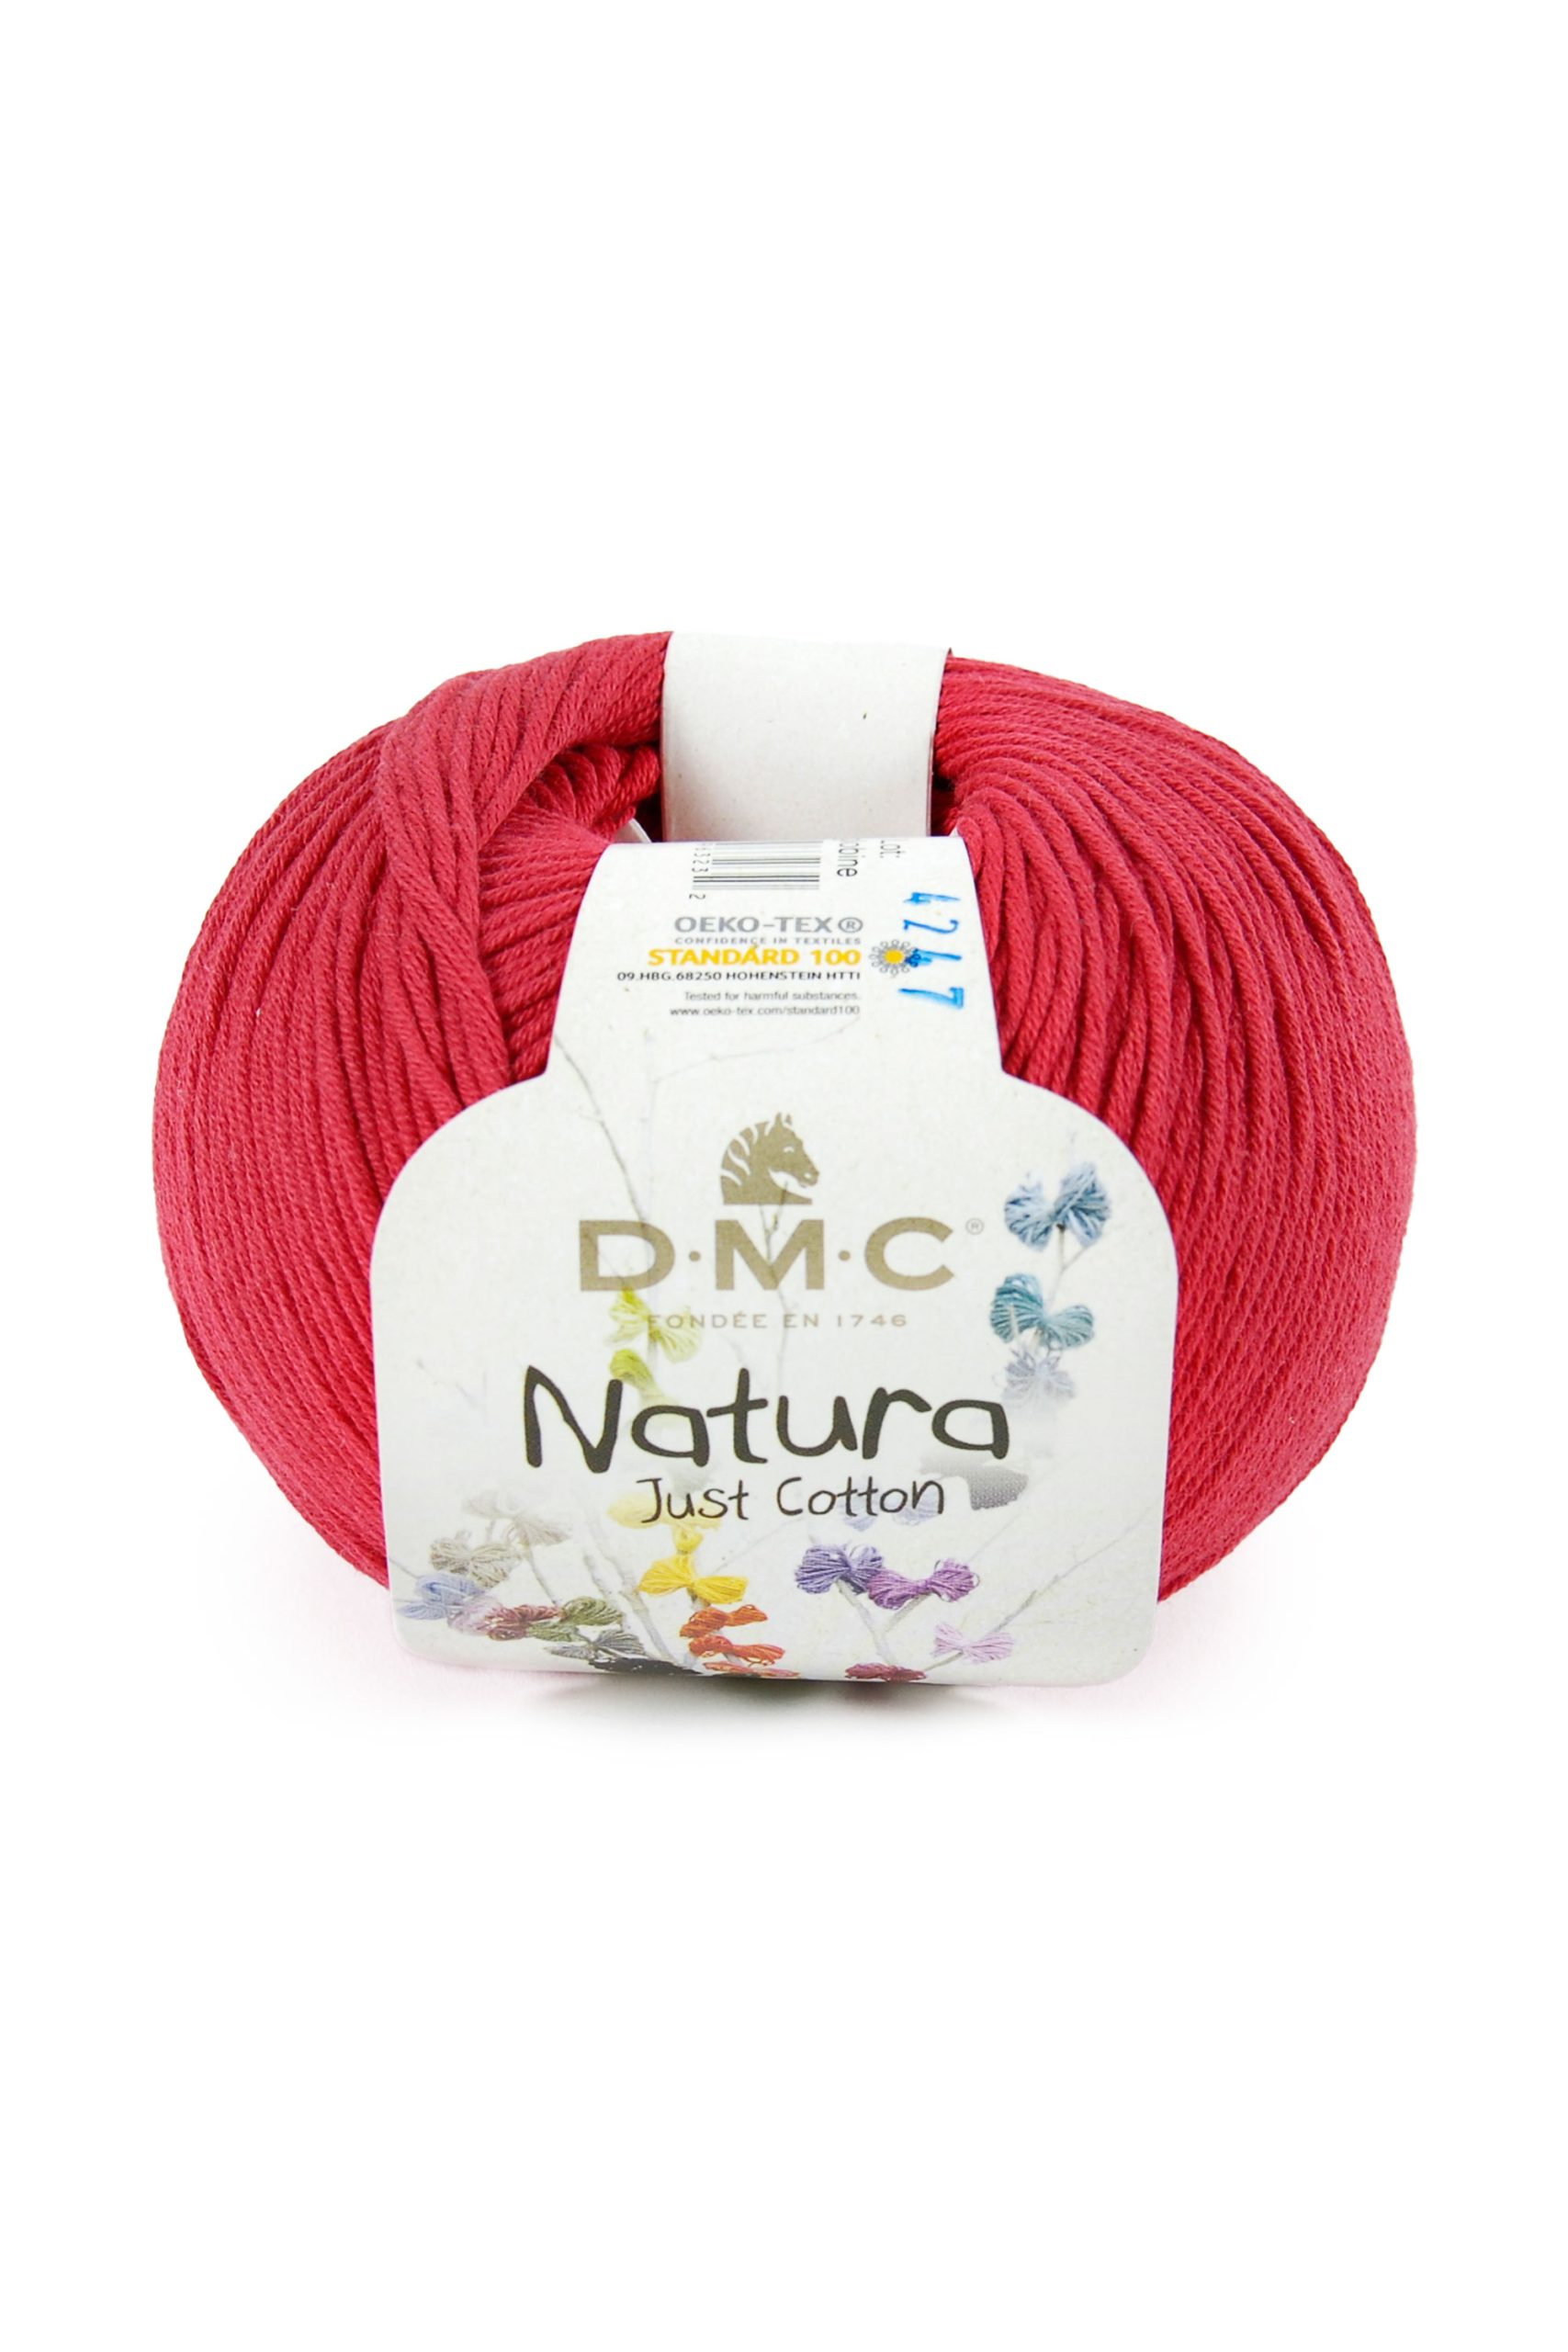 Cotone Dmc Natura Just Cotton Colore N555